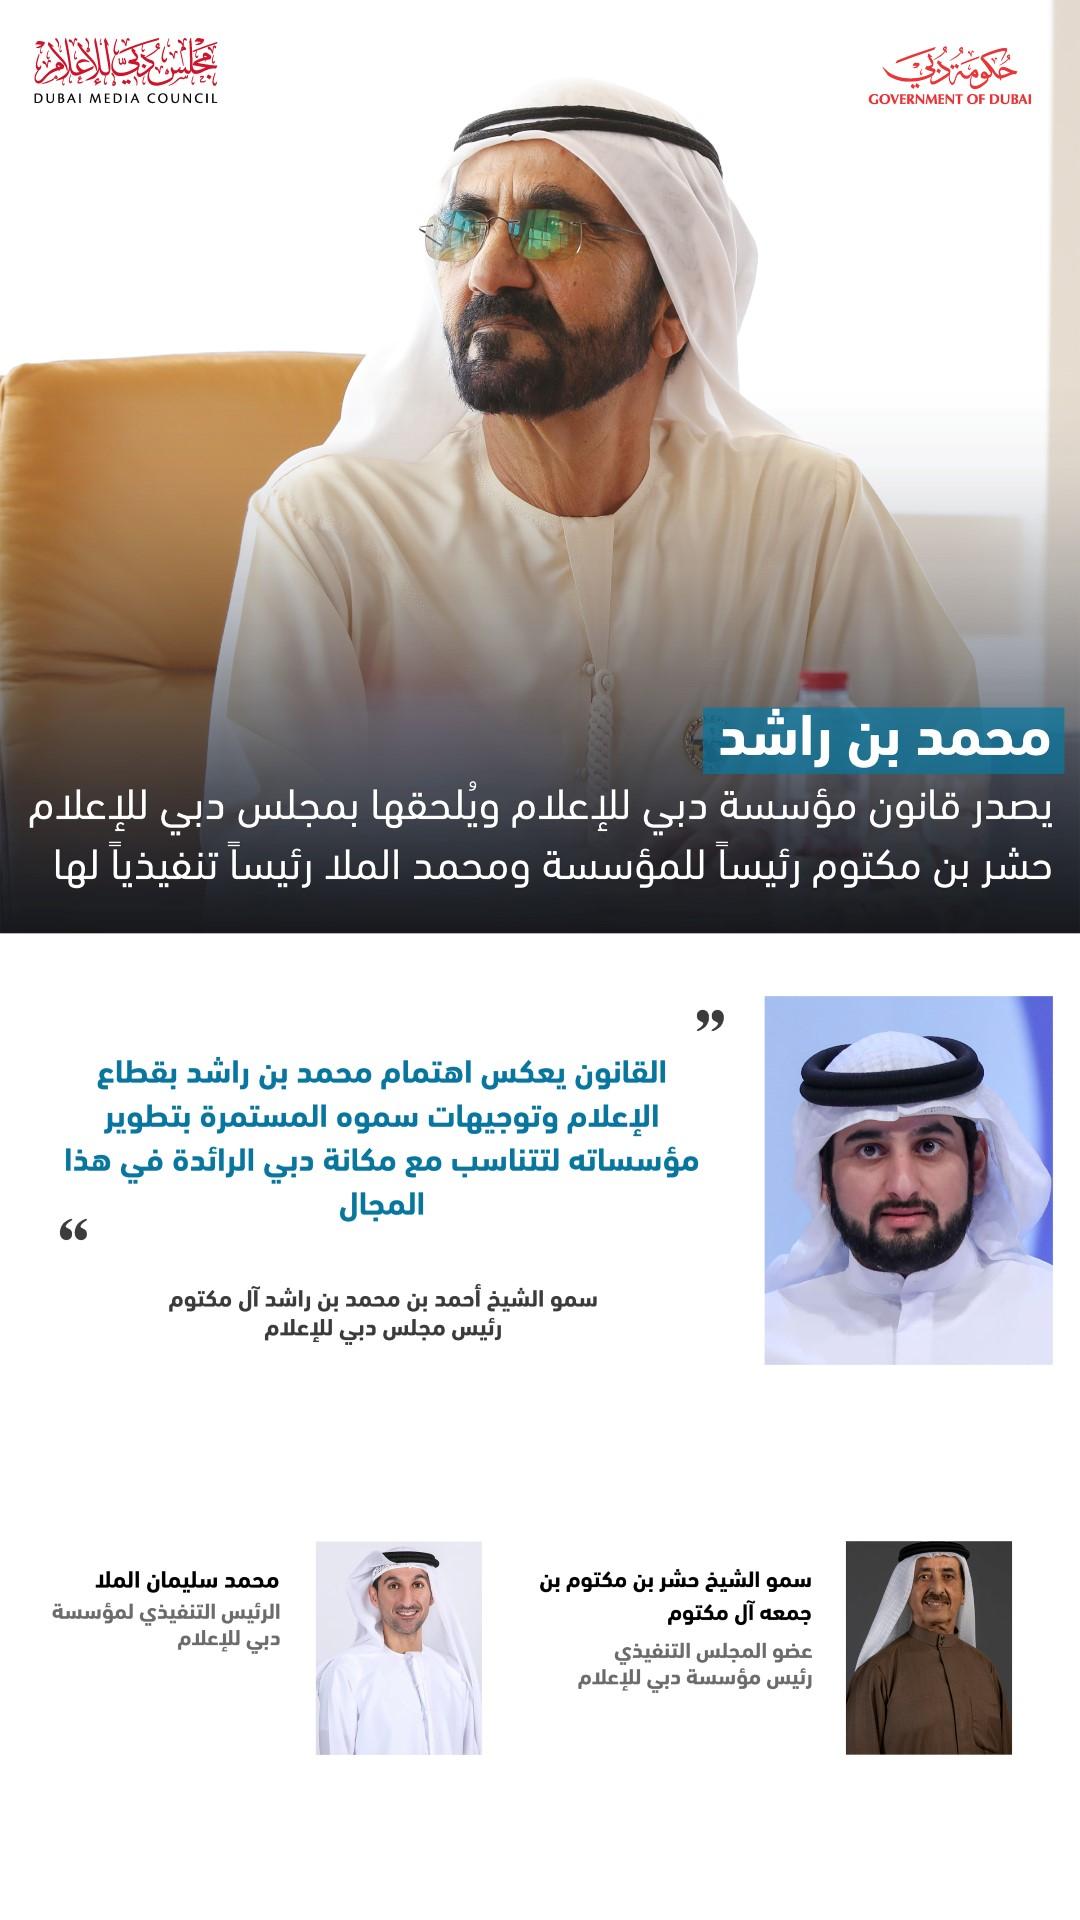 محمد بن راشد يصدر قانون مؤسسة دبي للإعلام ويُلحقها بمجلس دبي للإعلام